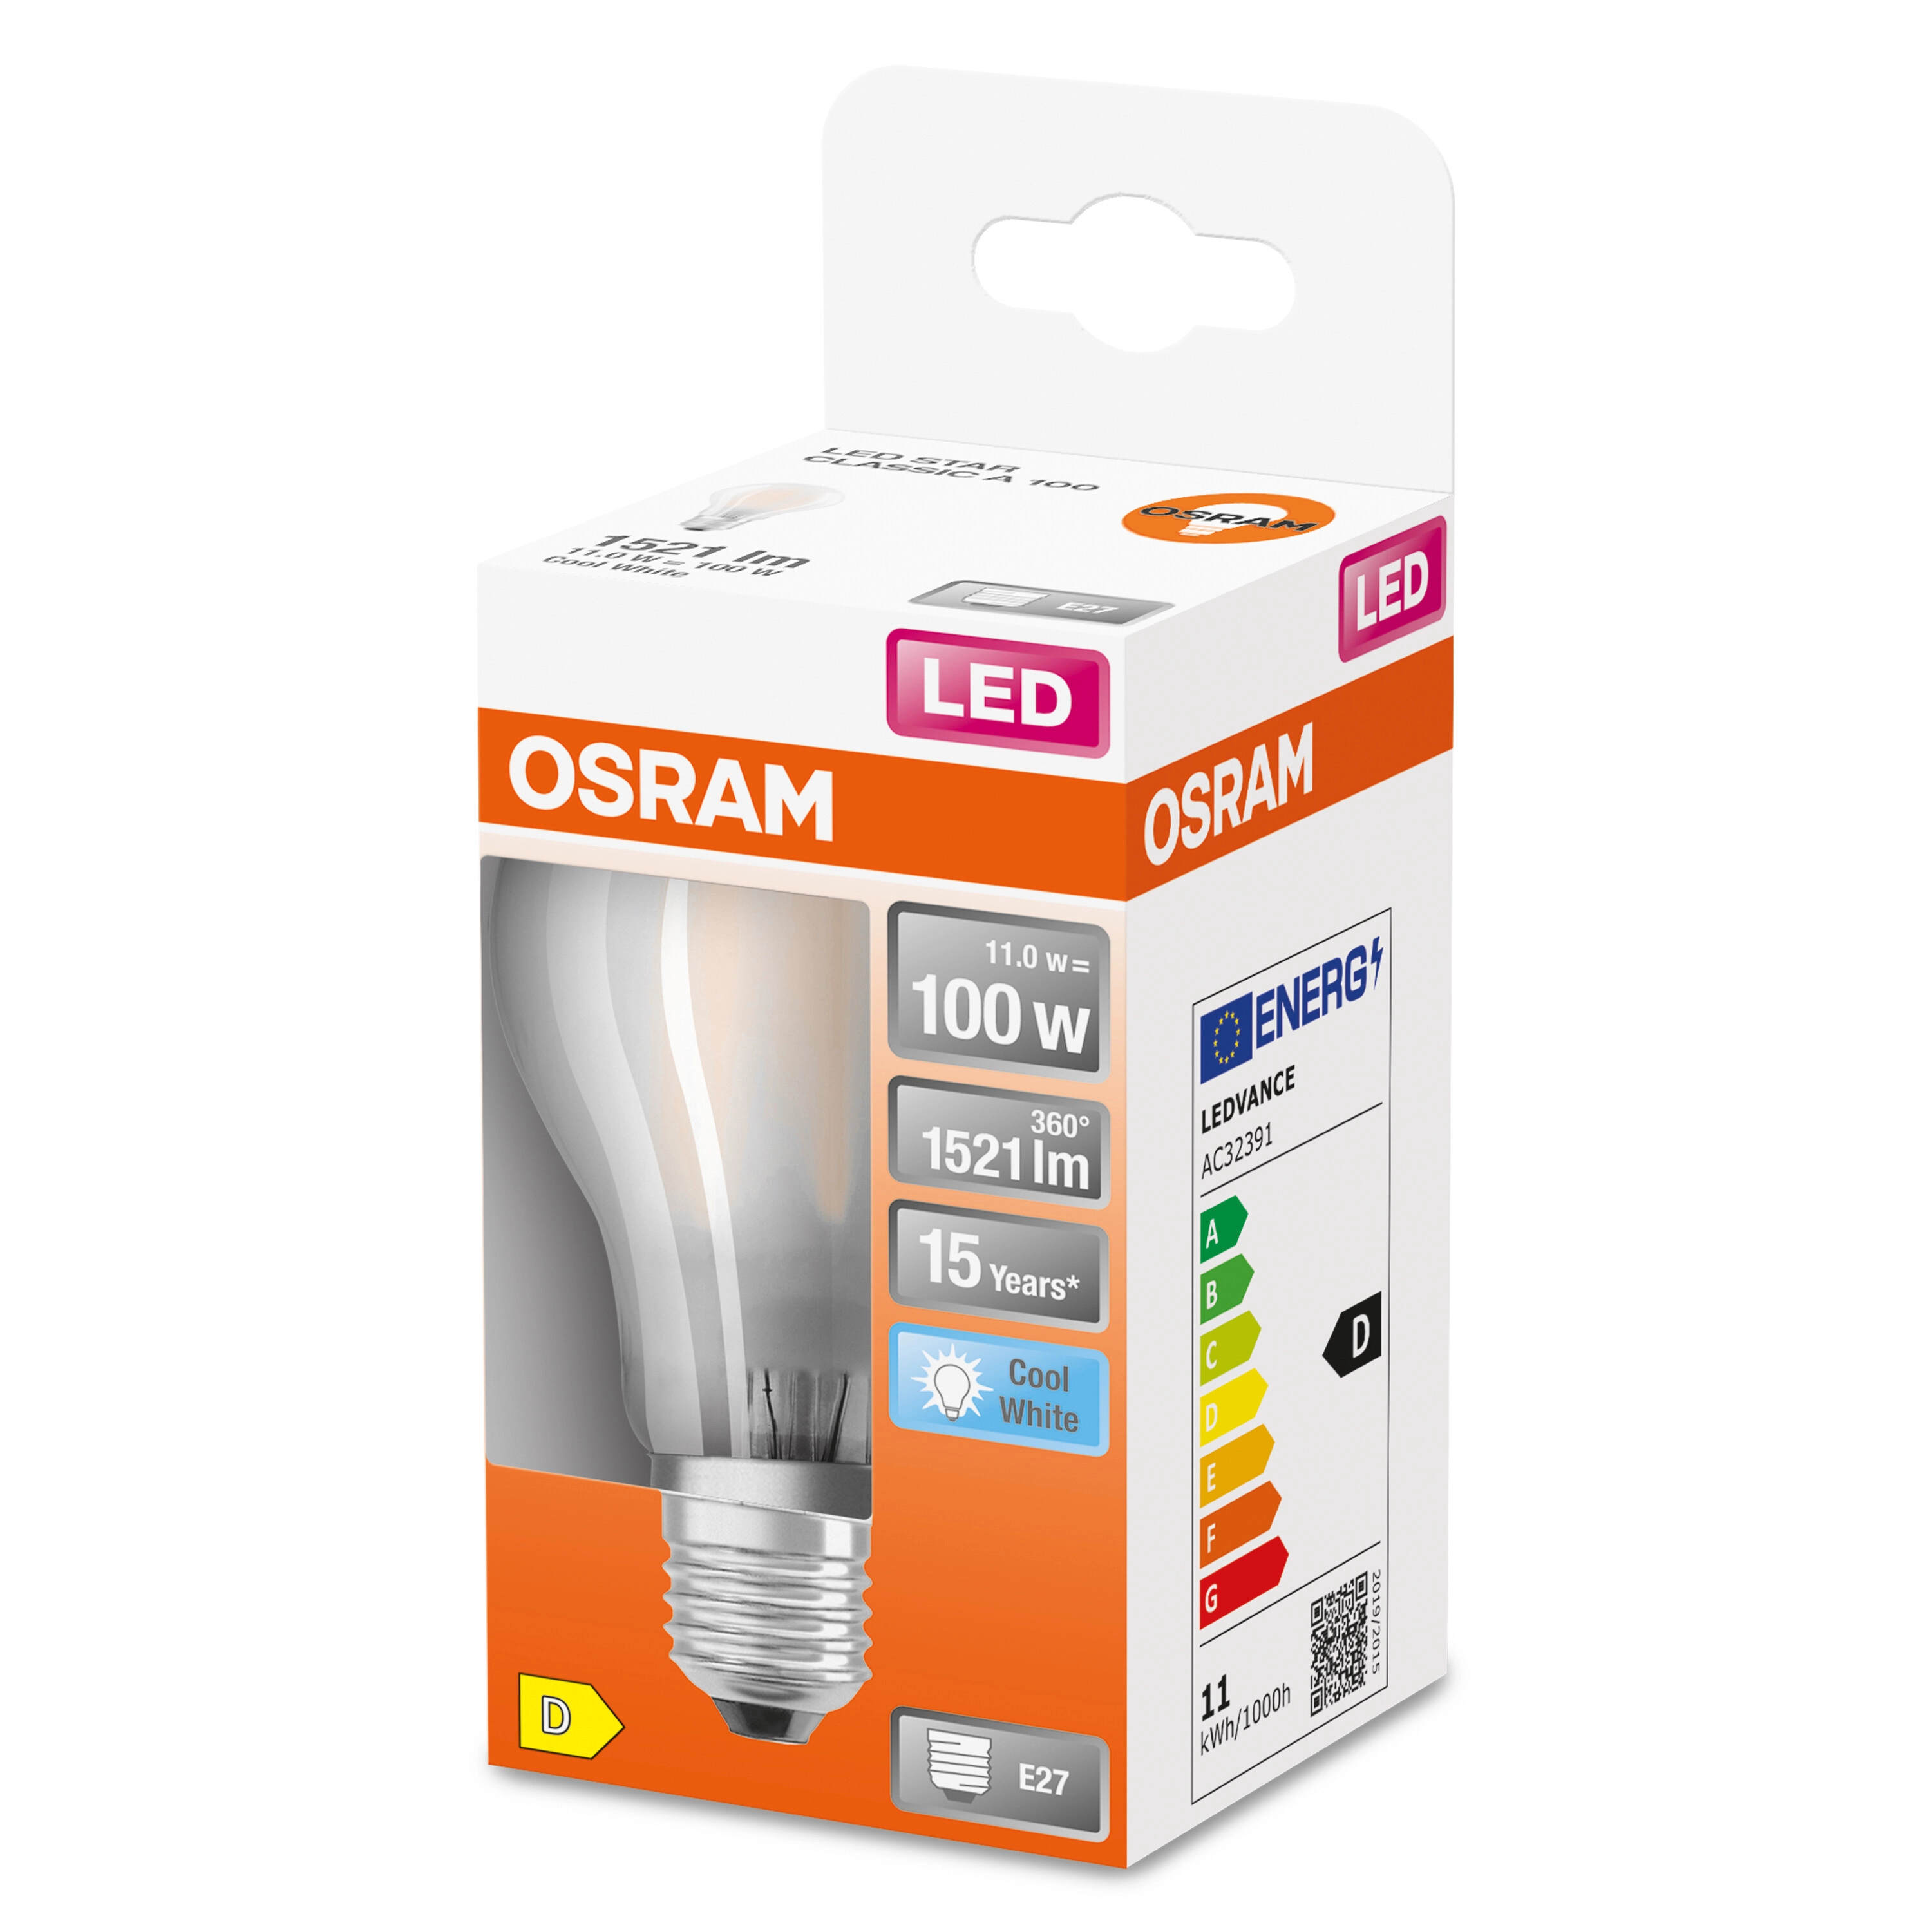 OSRAM lampadina LED smerigliata, forma a goccia 100W 4000K E27